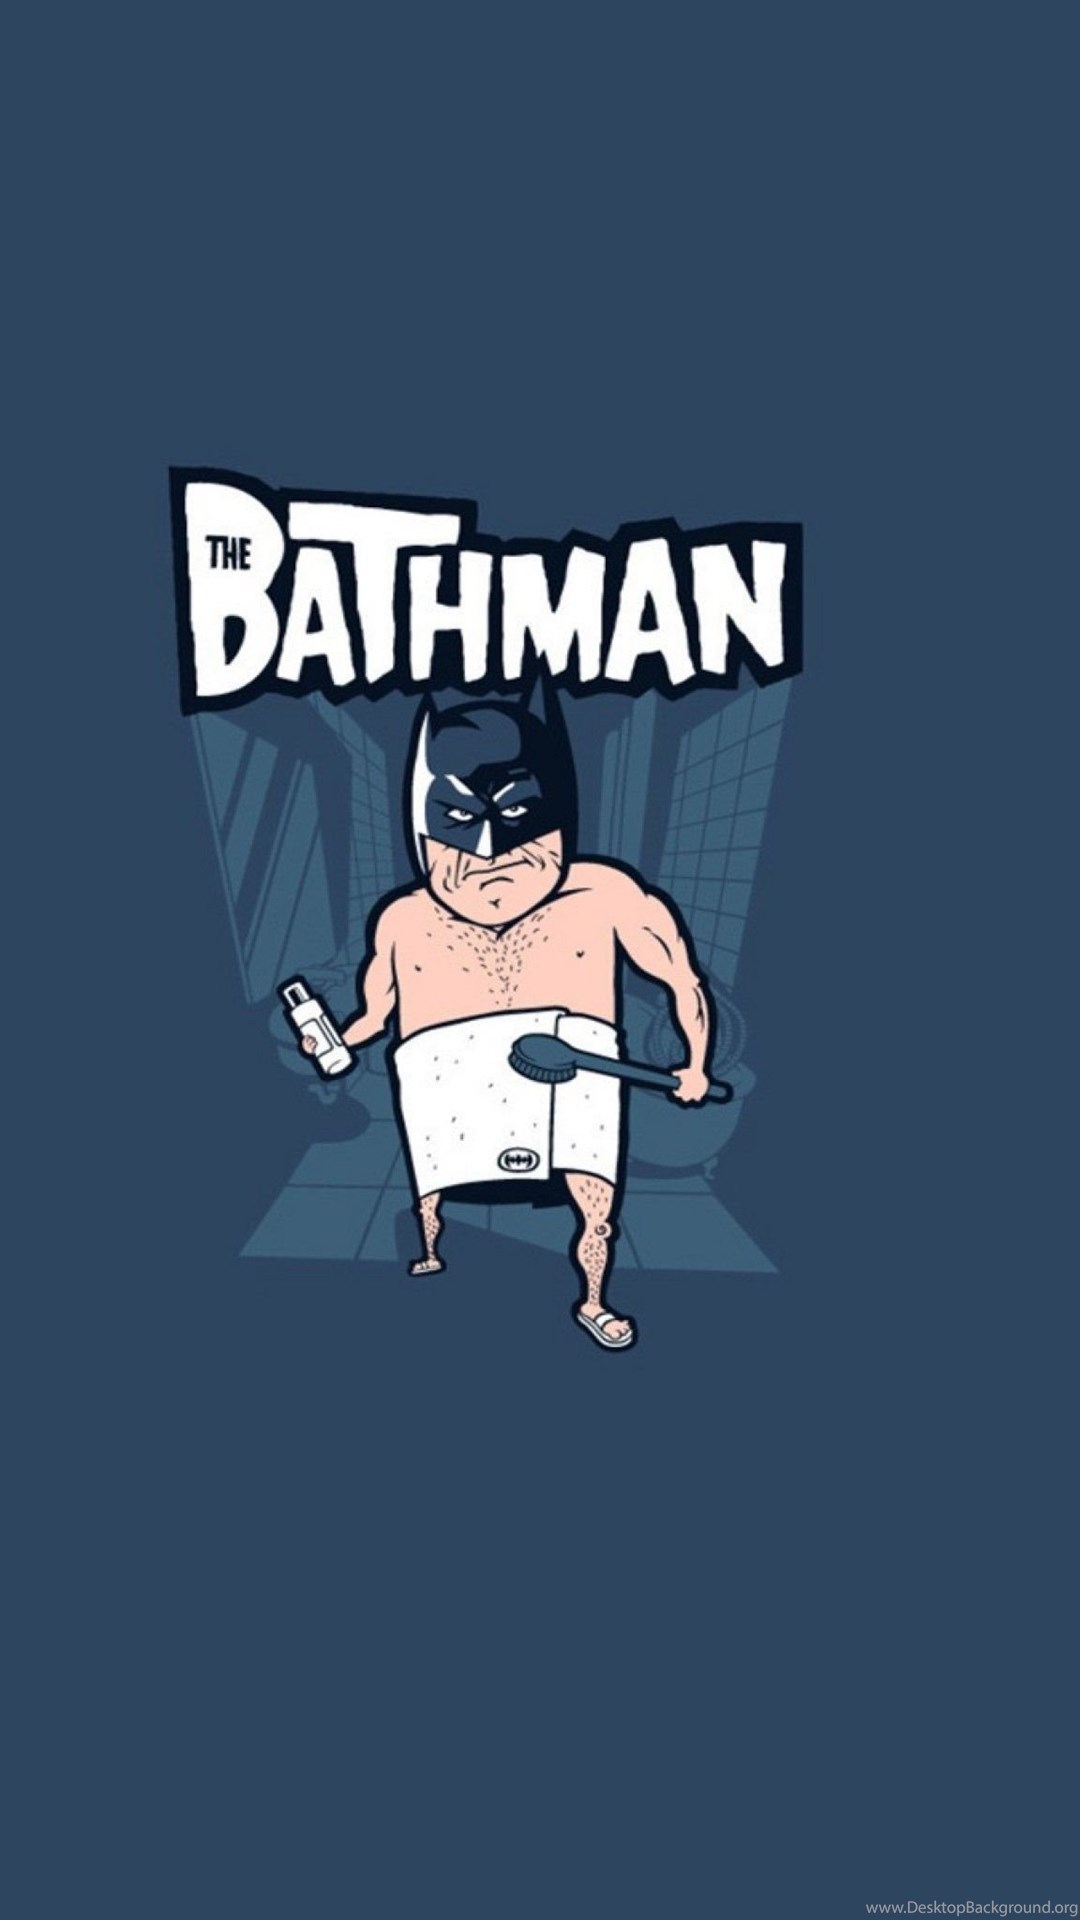 Batman Cartoon Funny Wallpapers - Bath Man Bat Man , HD Wallpaper & Backgrounds